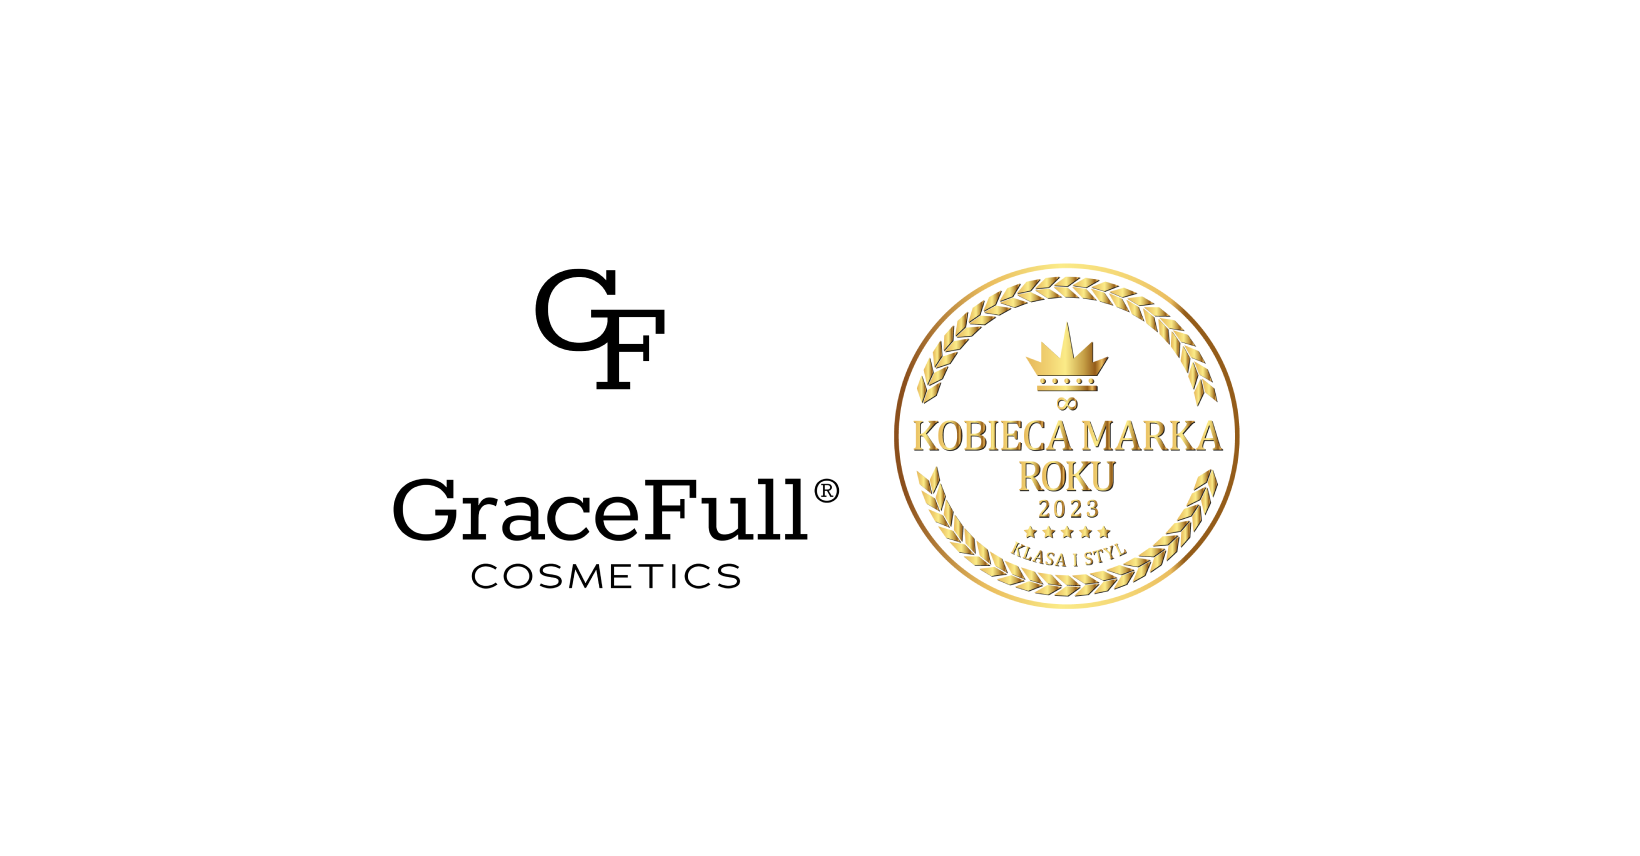 GraceFull Cosmetics - skuteczna moc odmładzania!